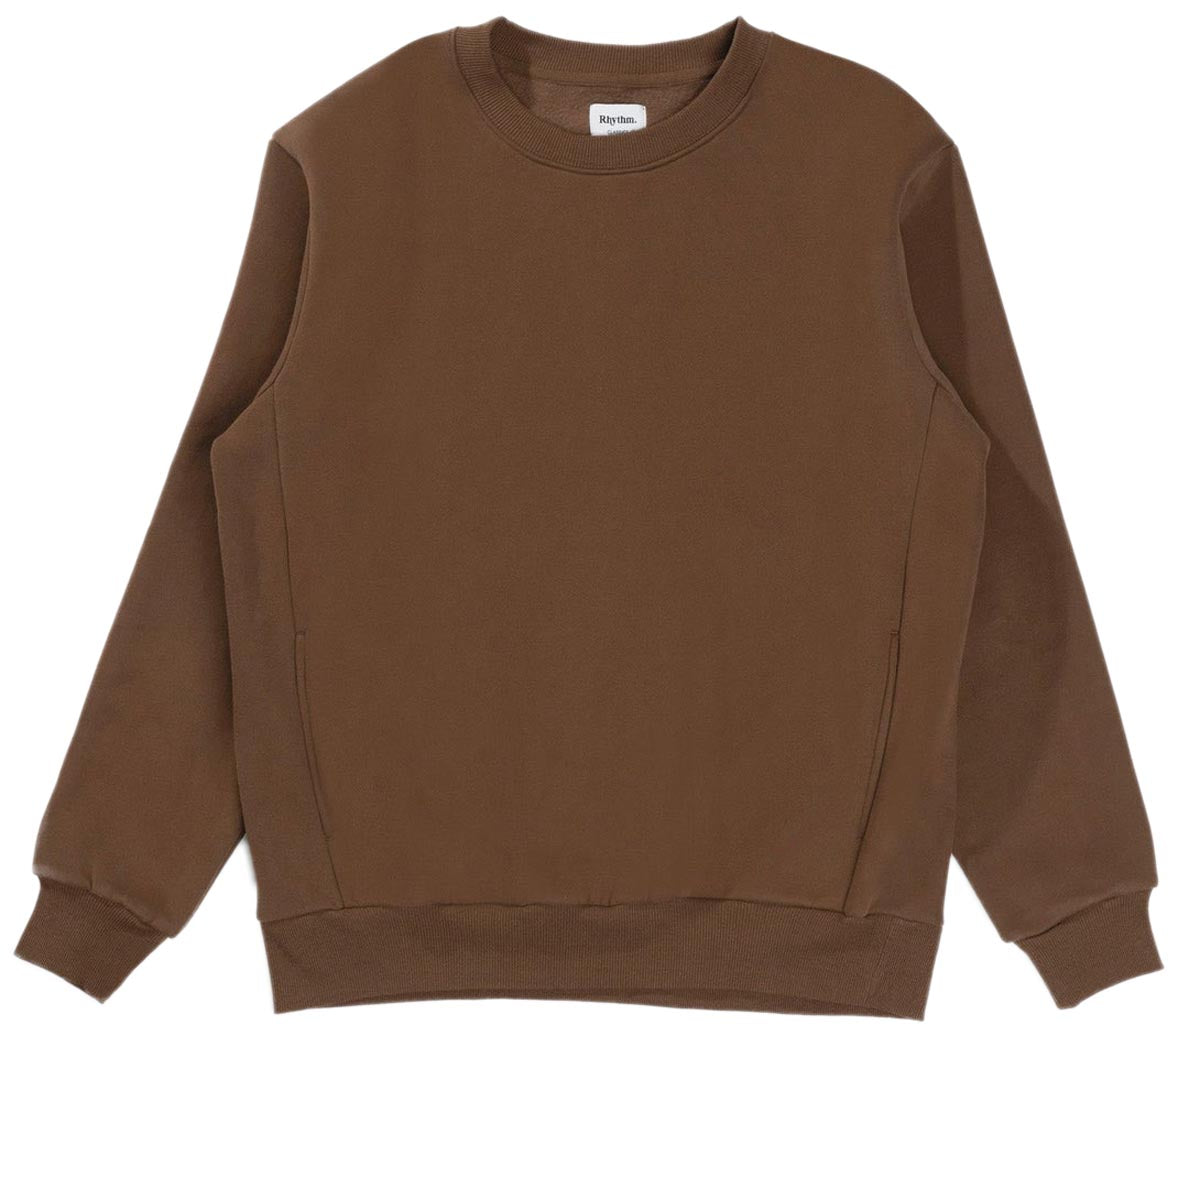 Rhythm Classic Fleece Crew Sweatshirt - Chocolate image 3